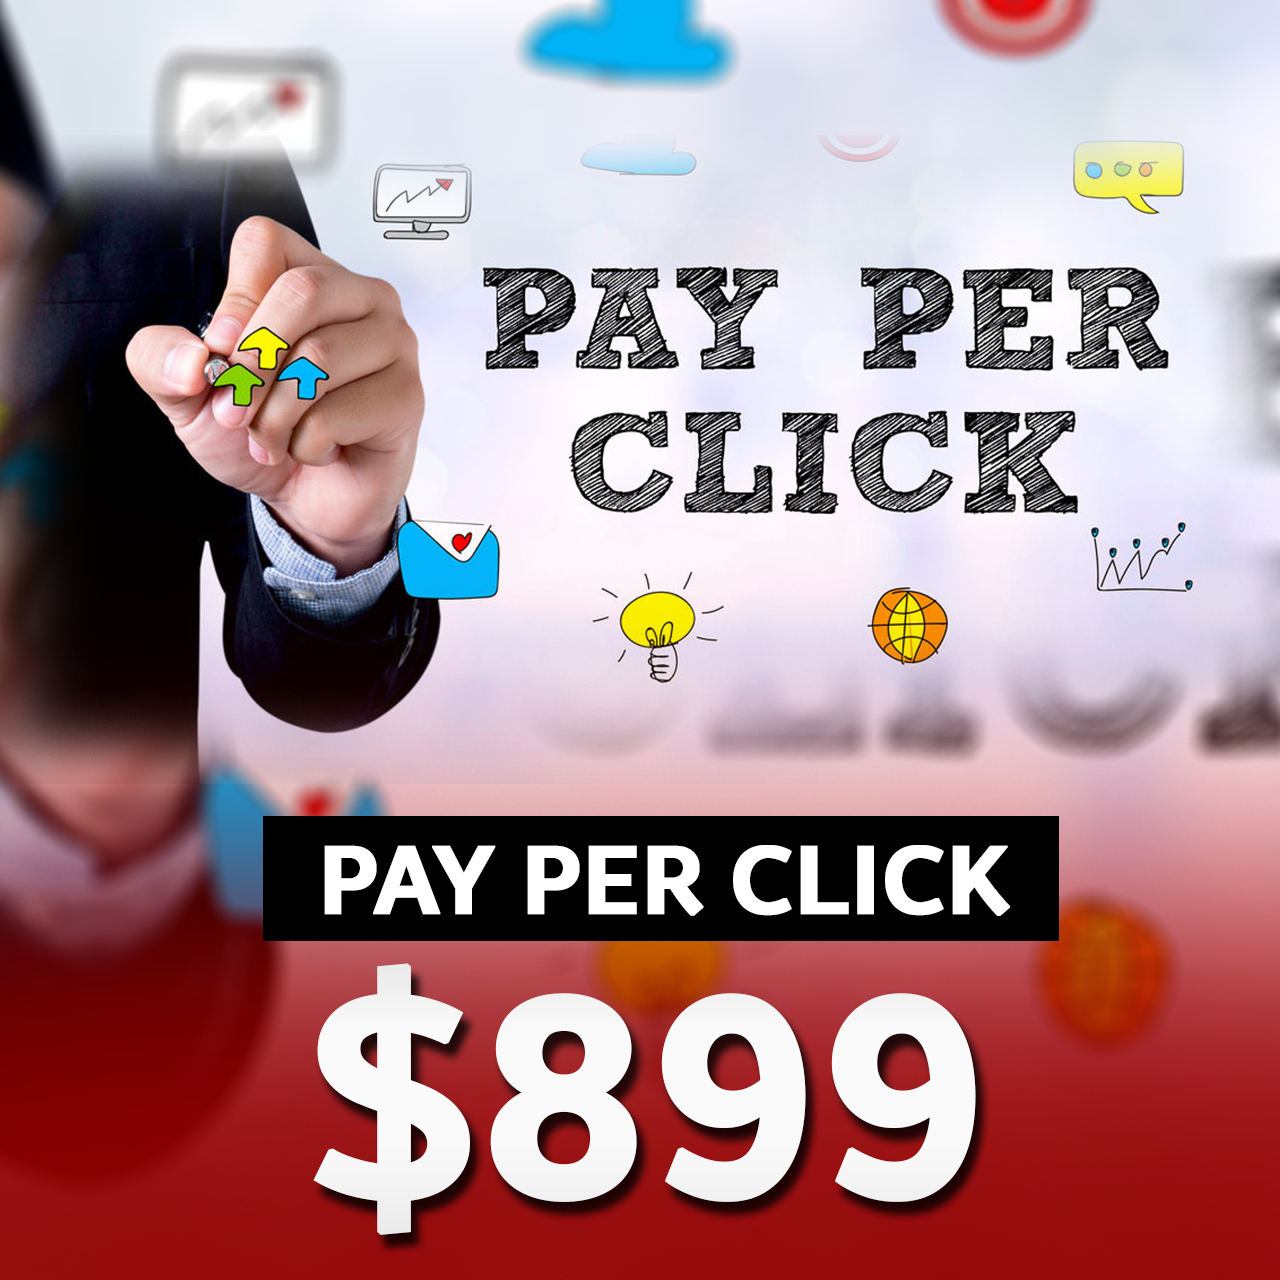 pay per click-$899